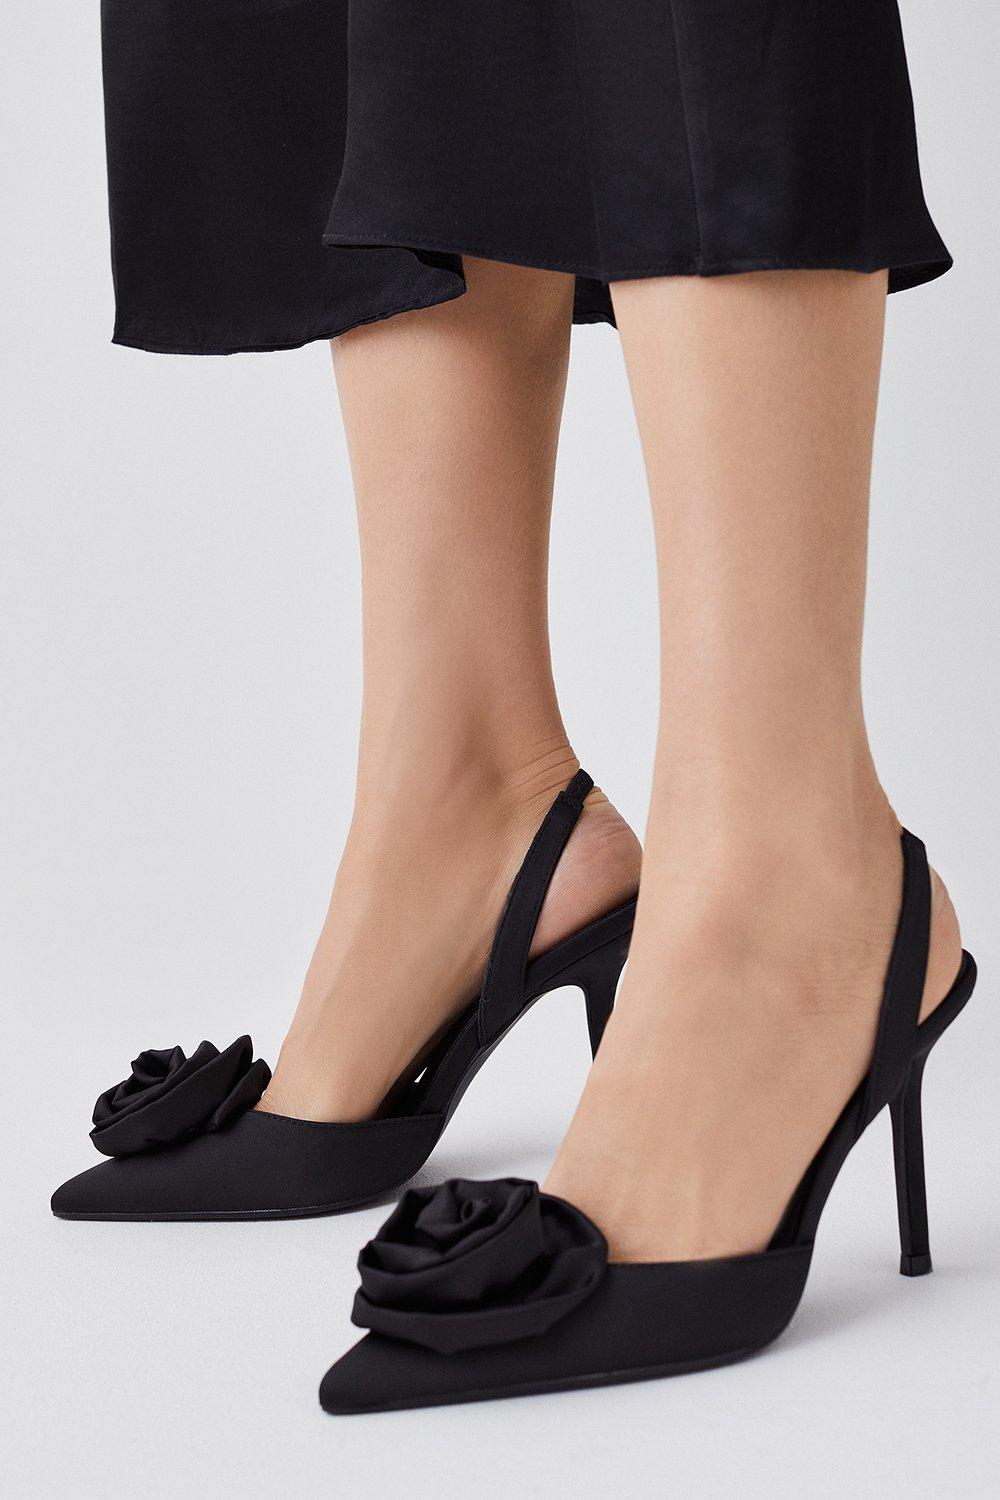 Women's Black Suede Platform Stiletto Heels Pumps Prom Wedding Shoes |  LizProm